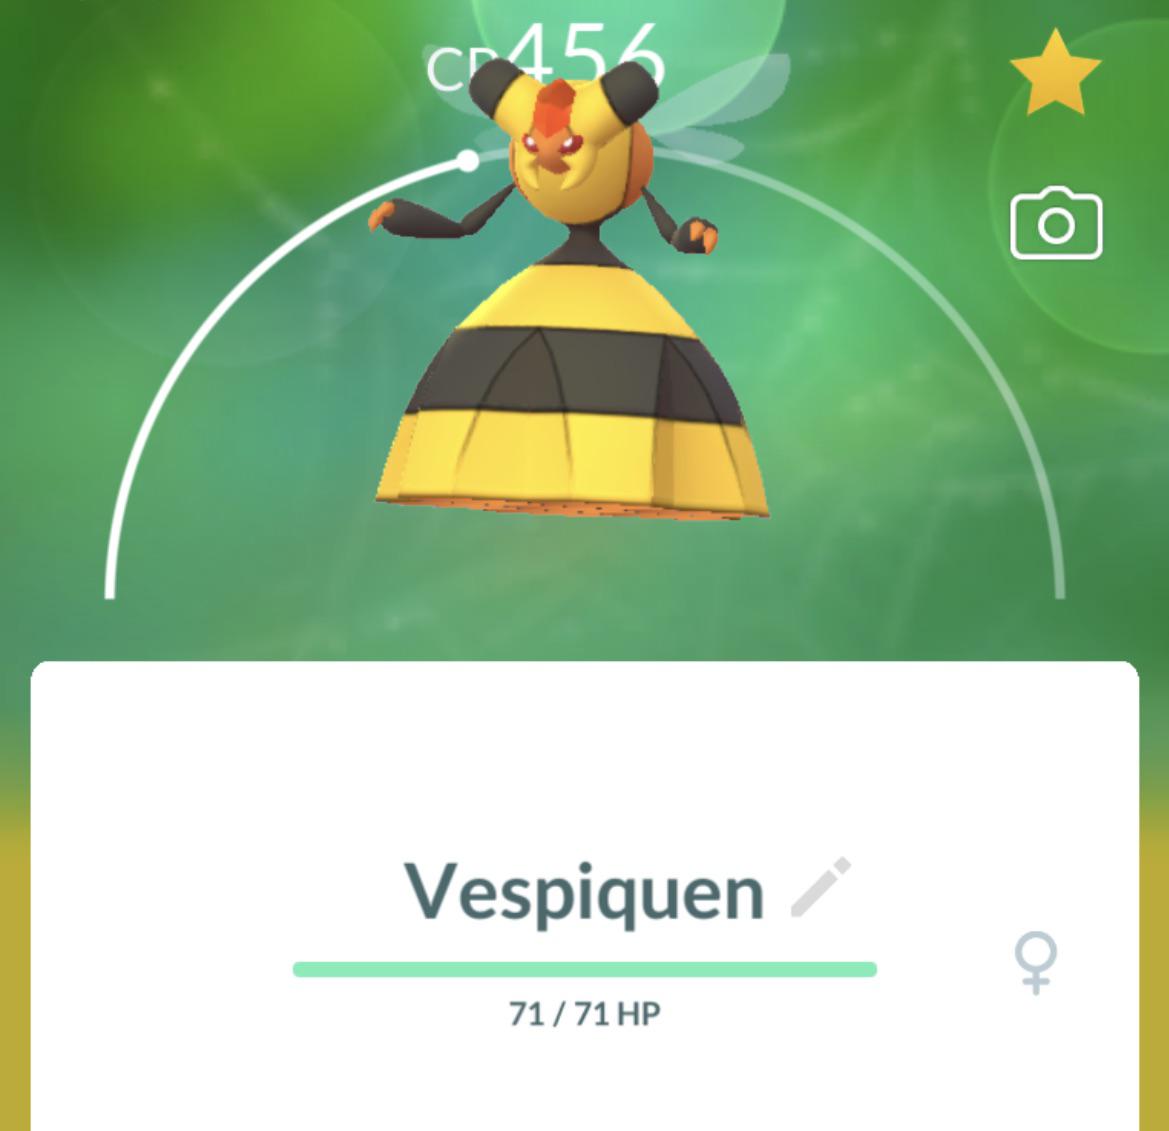 Kuidas saada Vespiqueni Pokemon GO-sse ja kas see võib olla läikiv?